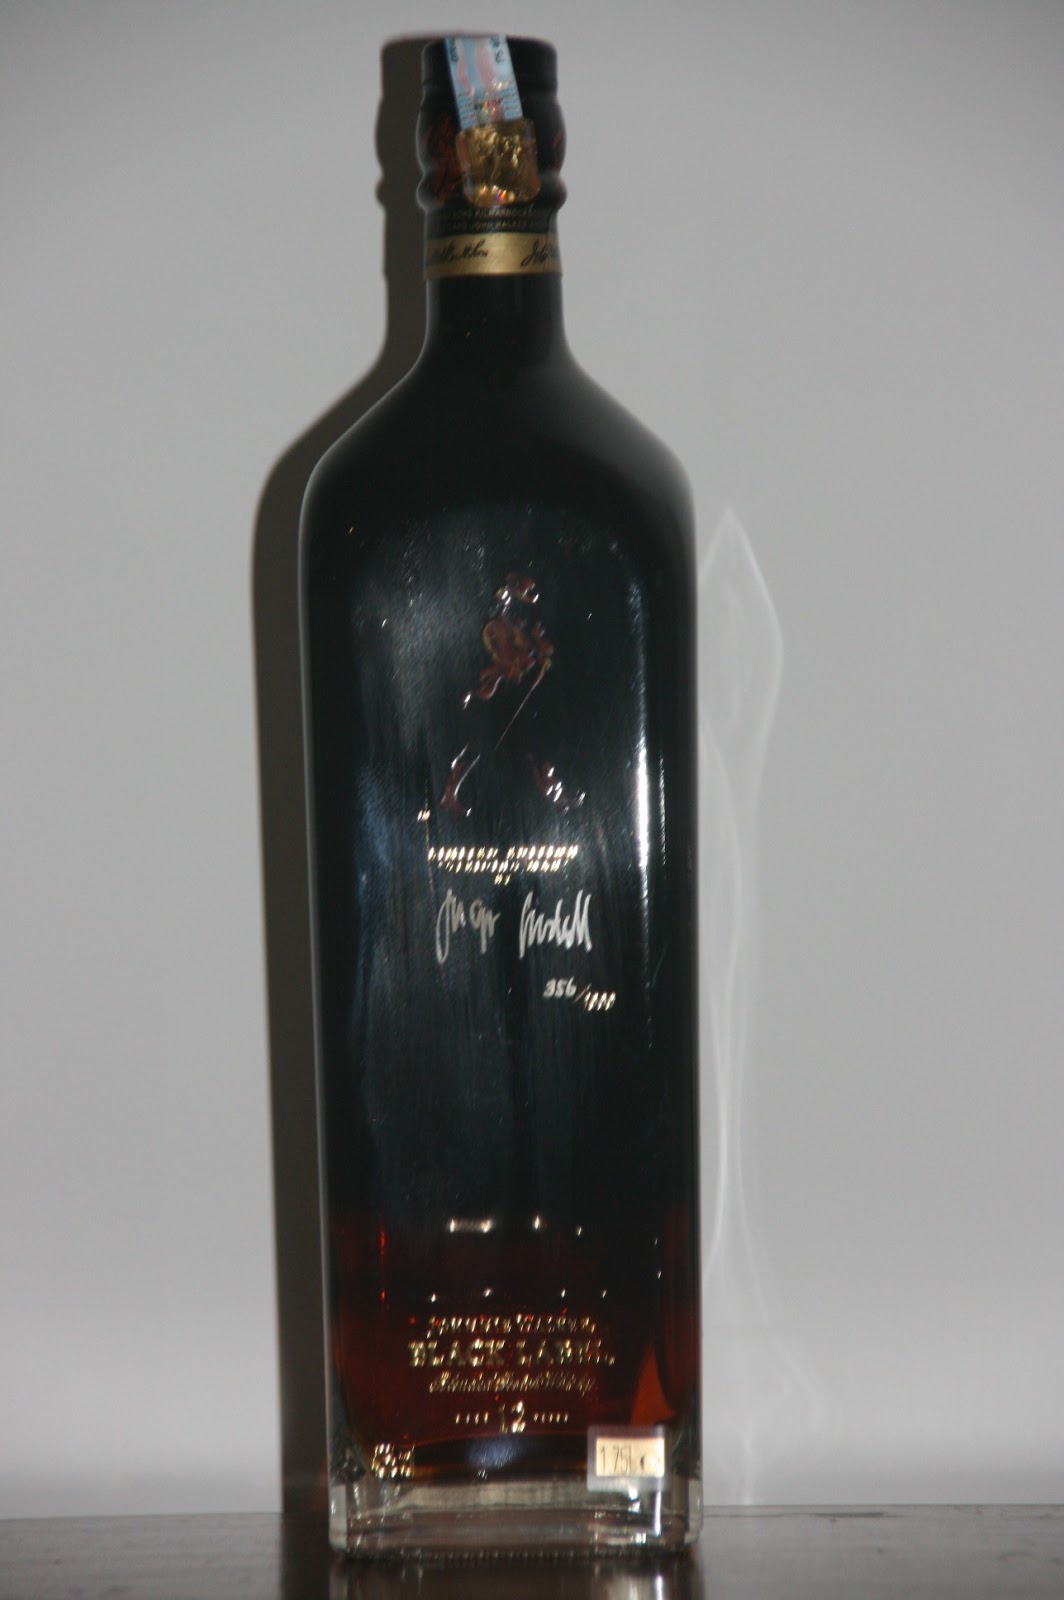 Johnnie Walker Bottles History and Evolution: Black Label